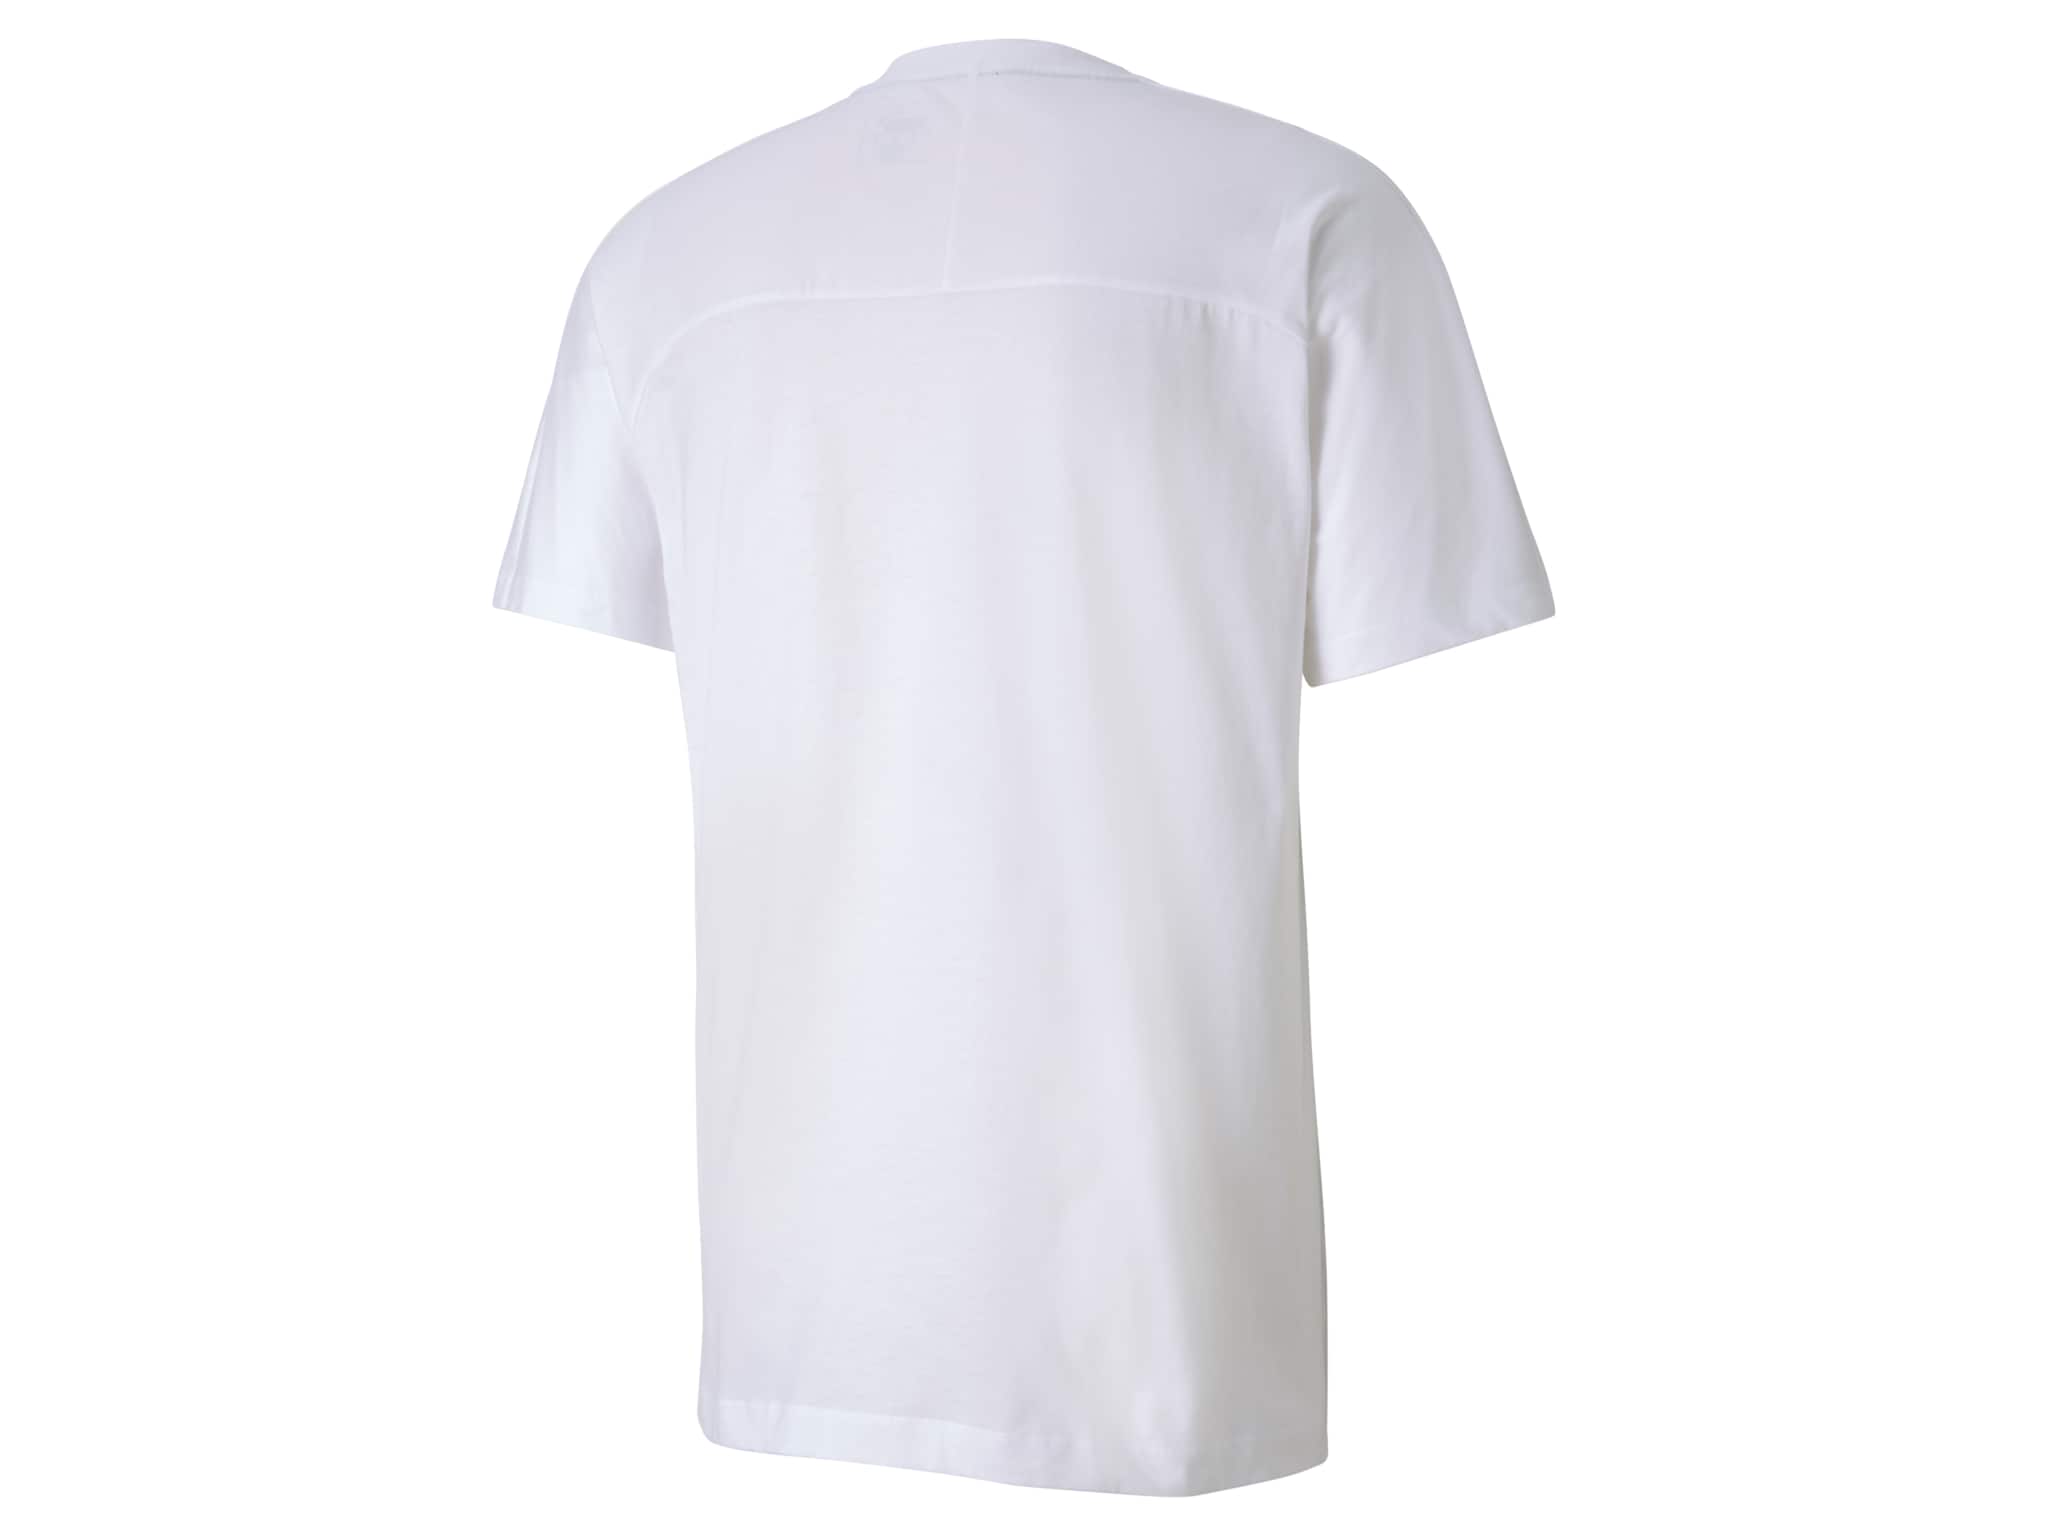 T-Shirt Herren - weiß, XXL